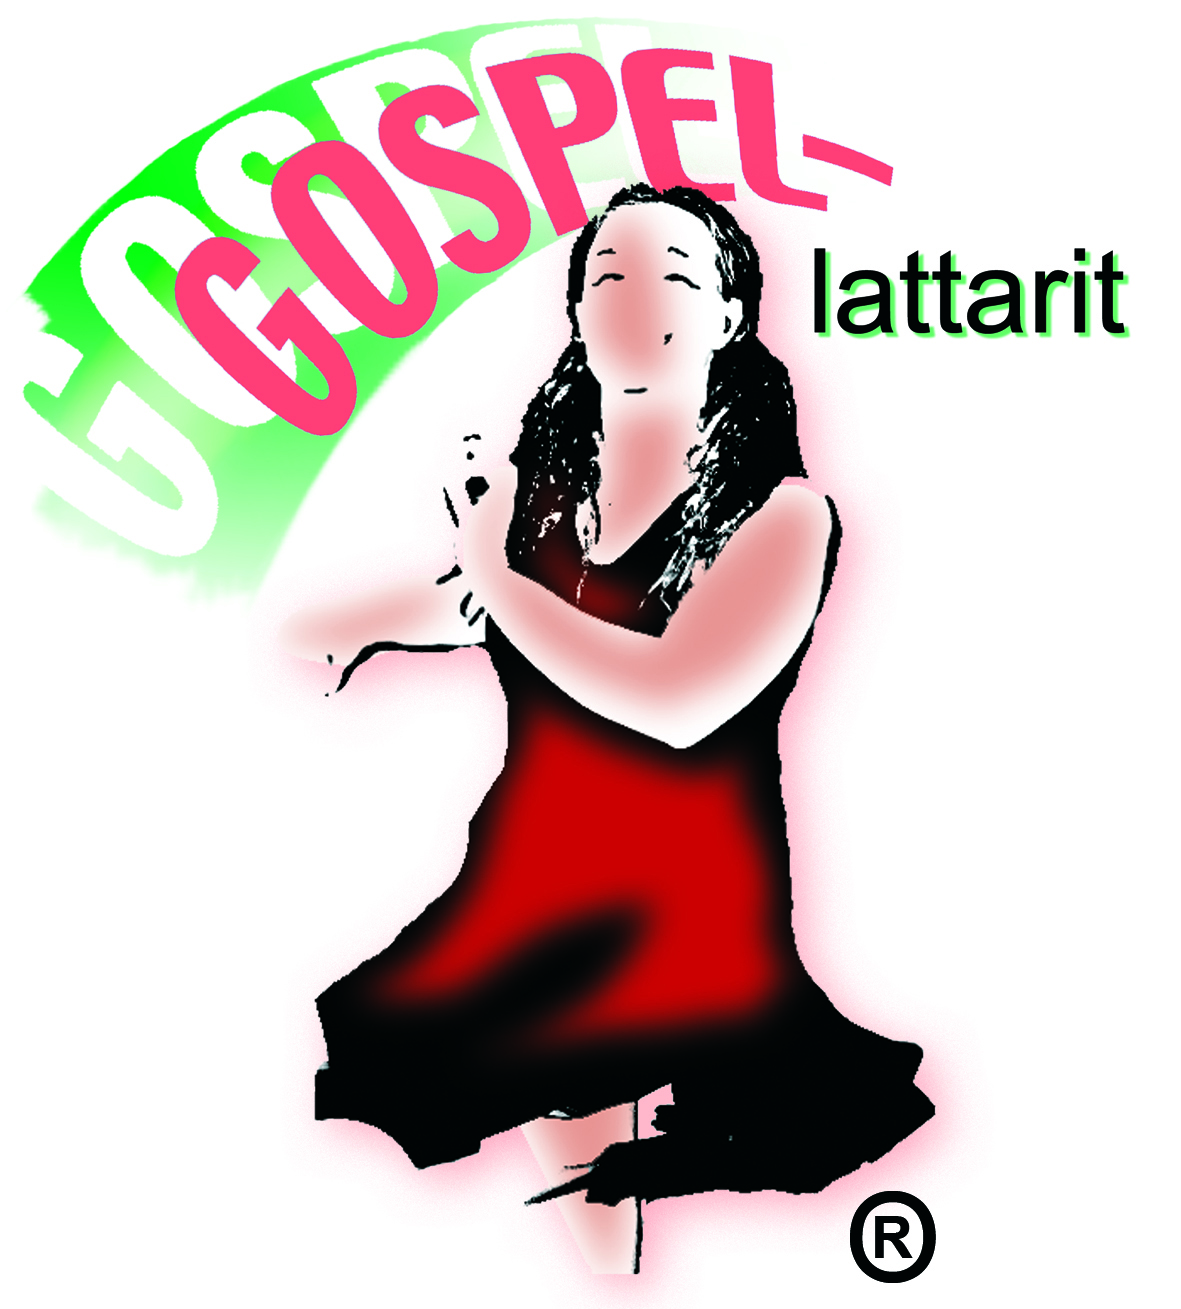 Gospel-lattarien logo. Nainen tanssii punaisessa mekossa.